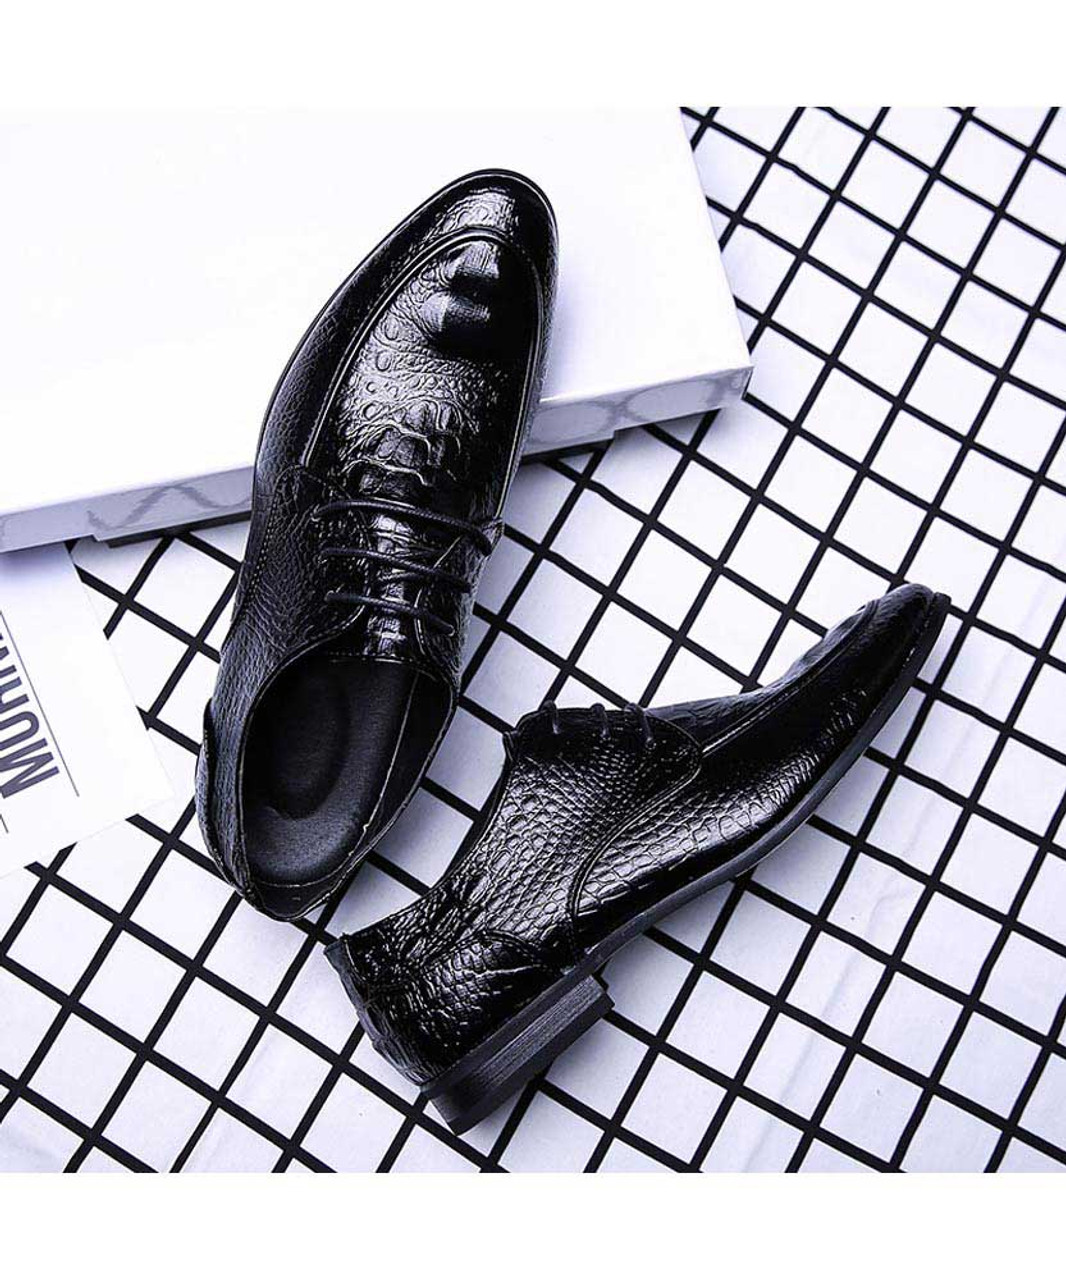 Black crocodile skin pattern derby dress shoe | Mens dress shoes online ...